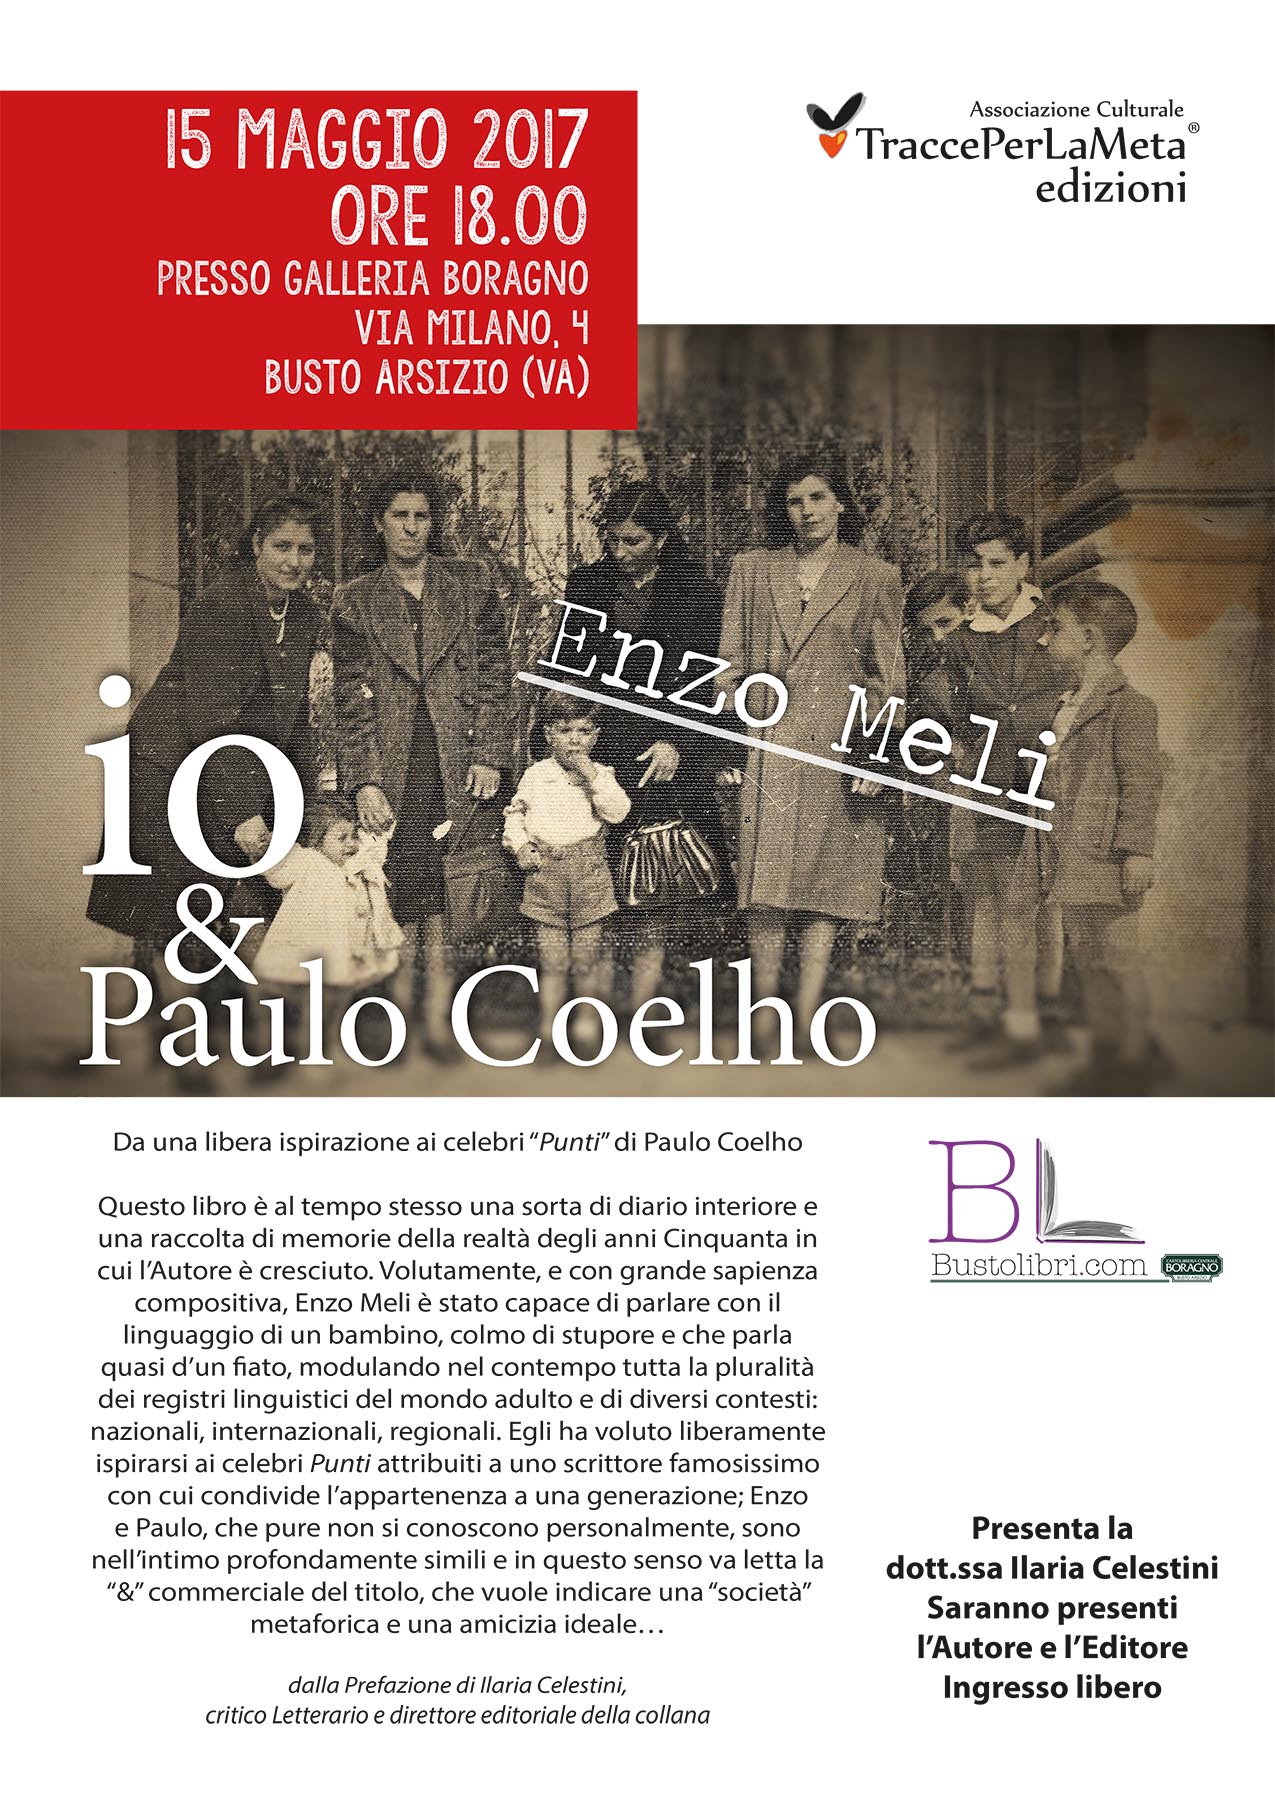 15 maggio 2017 – Presentazione Libro “io & Paulo Coelho” di Enzo Meli